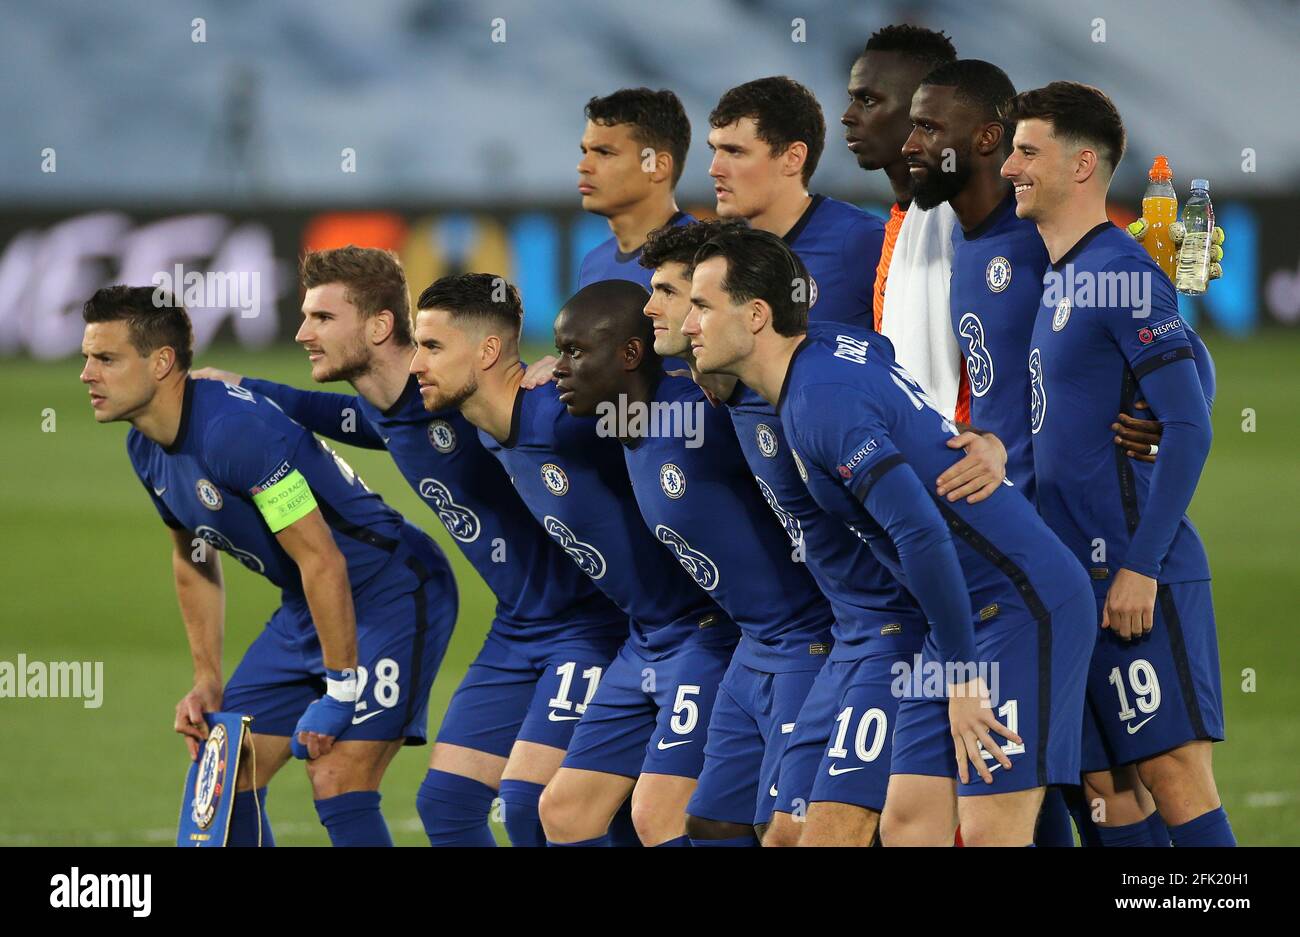 Das Chelsea-Team stellt sich vor dem UEFA Champions League Halbfinale, der  ersten Etappe, im Estadio Alfredo Di Stefano in Madrid, Spanien, für ein  Foto an. Bilddatum: Dienstag, 27. April 2021 Stockfotografie - Alamy